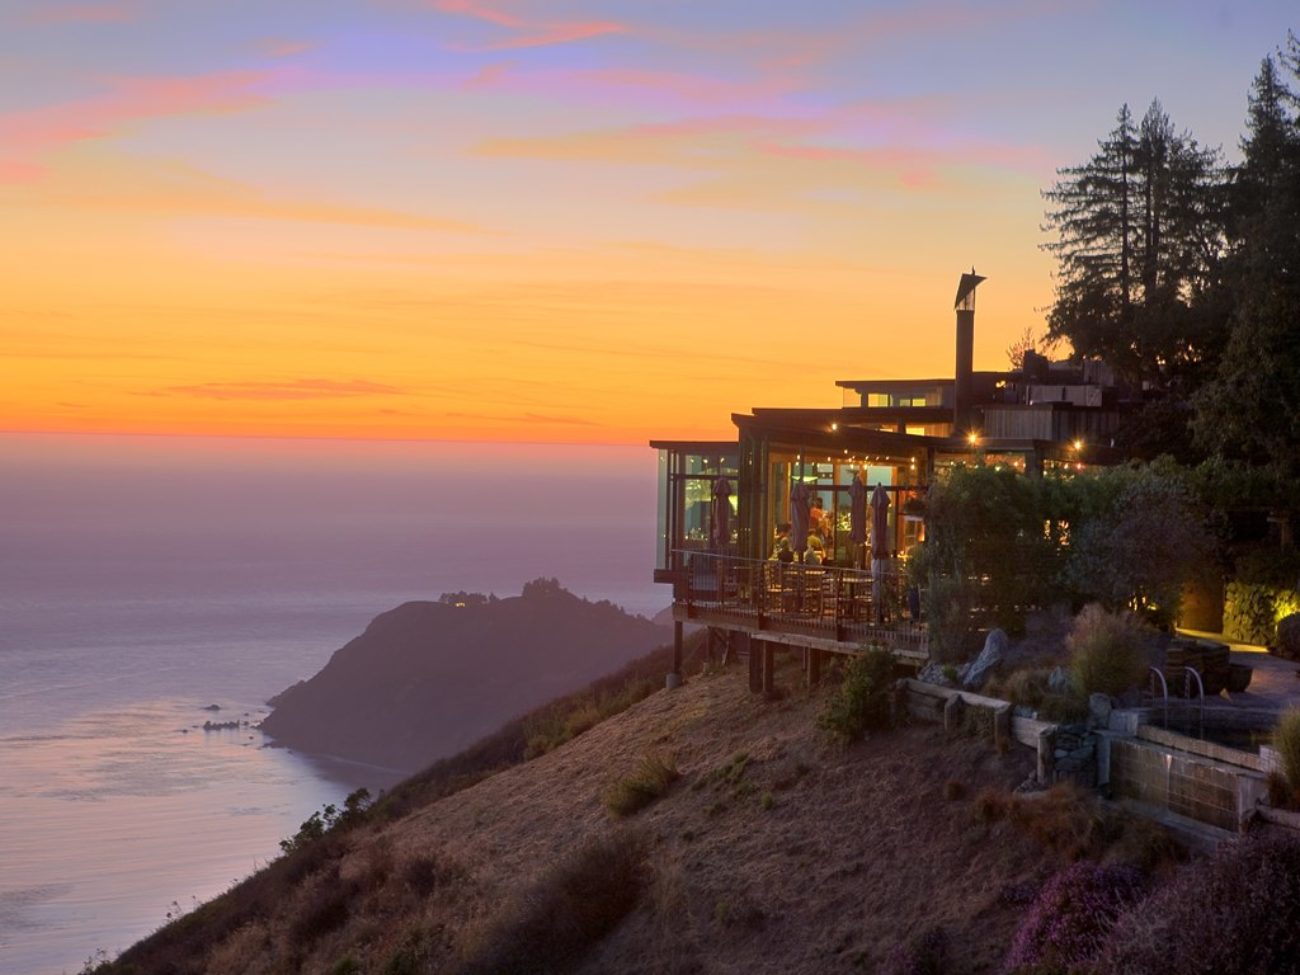 restaurant-view-ocean-sunset-golden-hour-romantic-lights-post-ranch-inn-california-usa